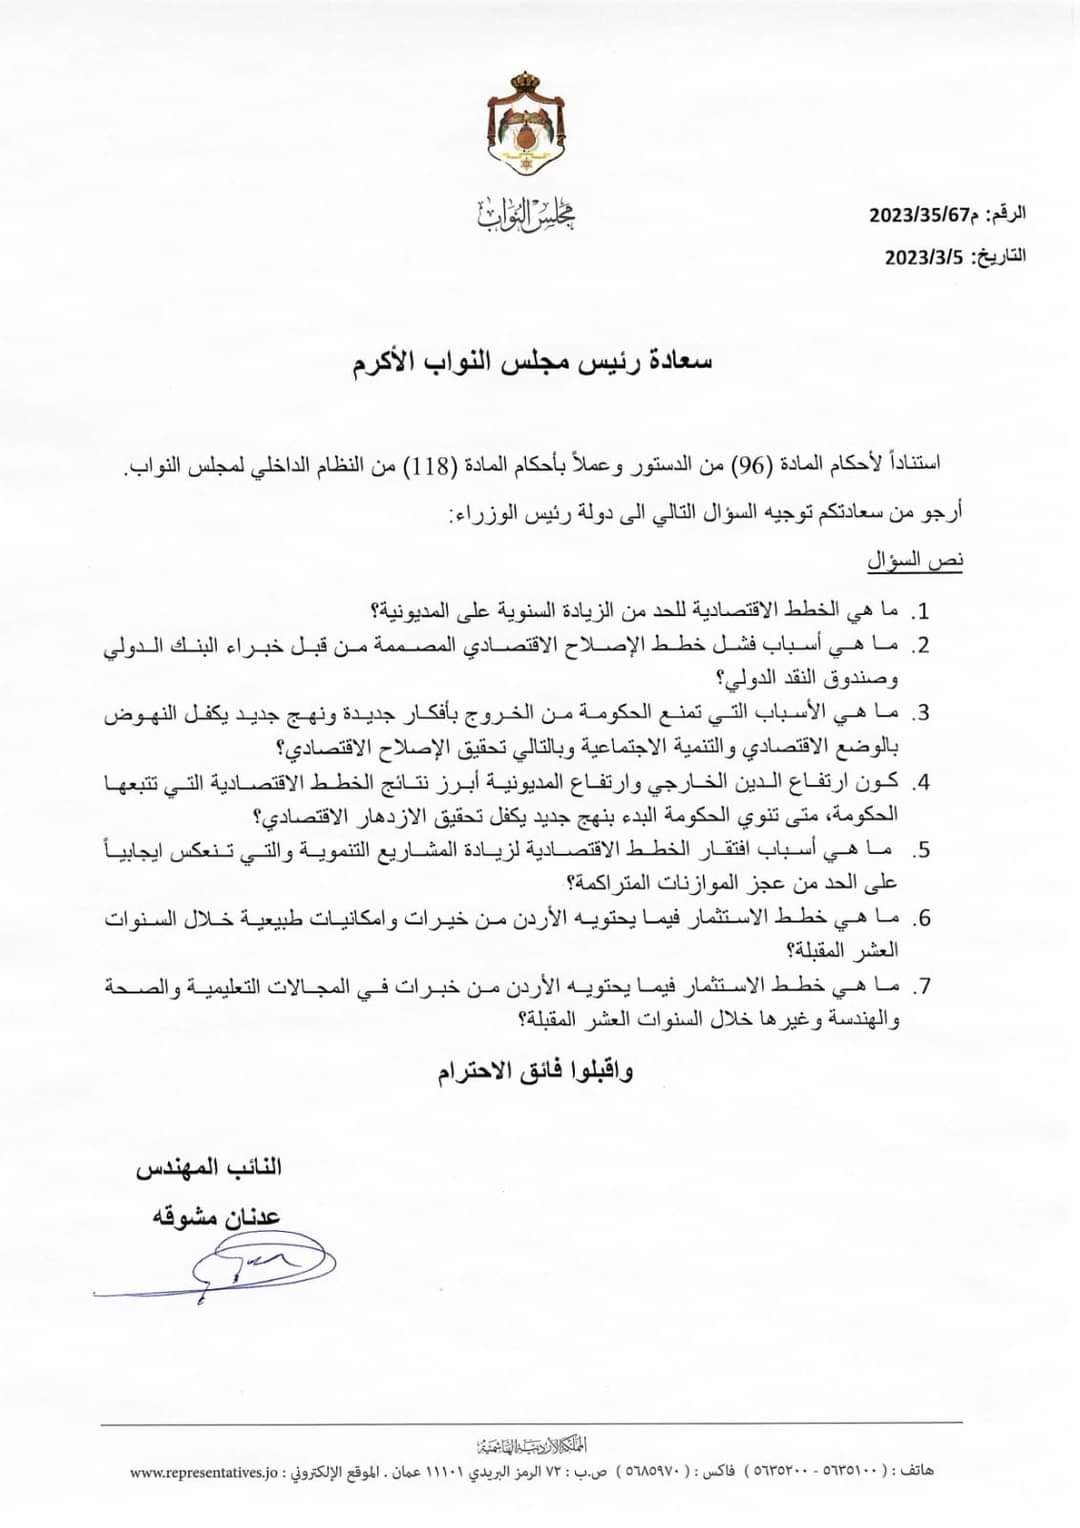 النائب عدنان مشوقة يوجه سؤالًا نيابيًا إلى رئيس الوزراء حول الإصلاح الاقتصادي 